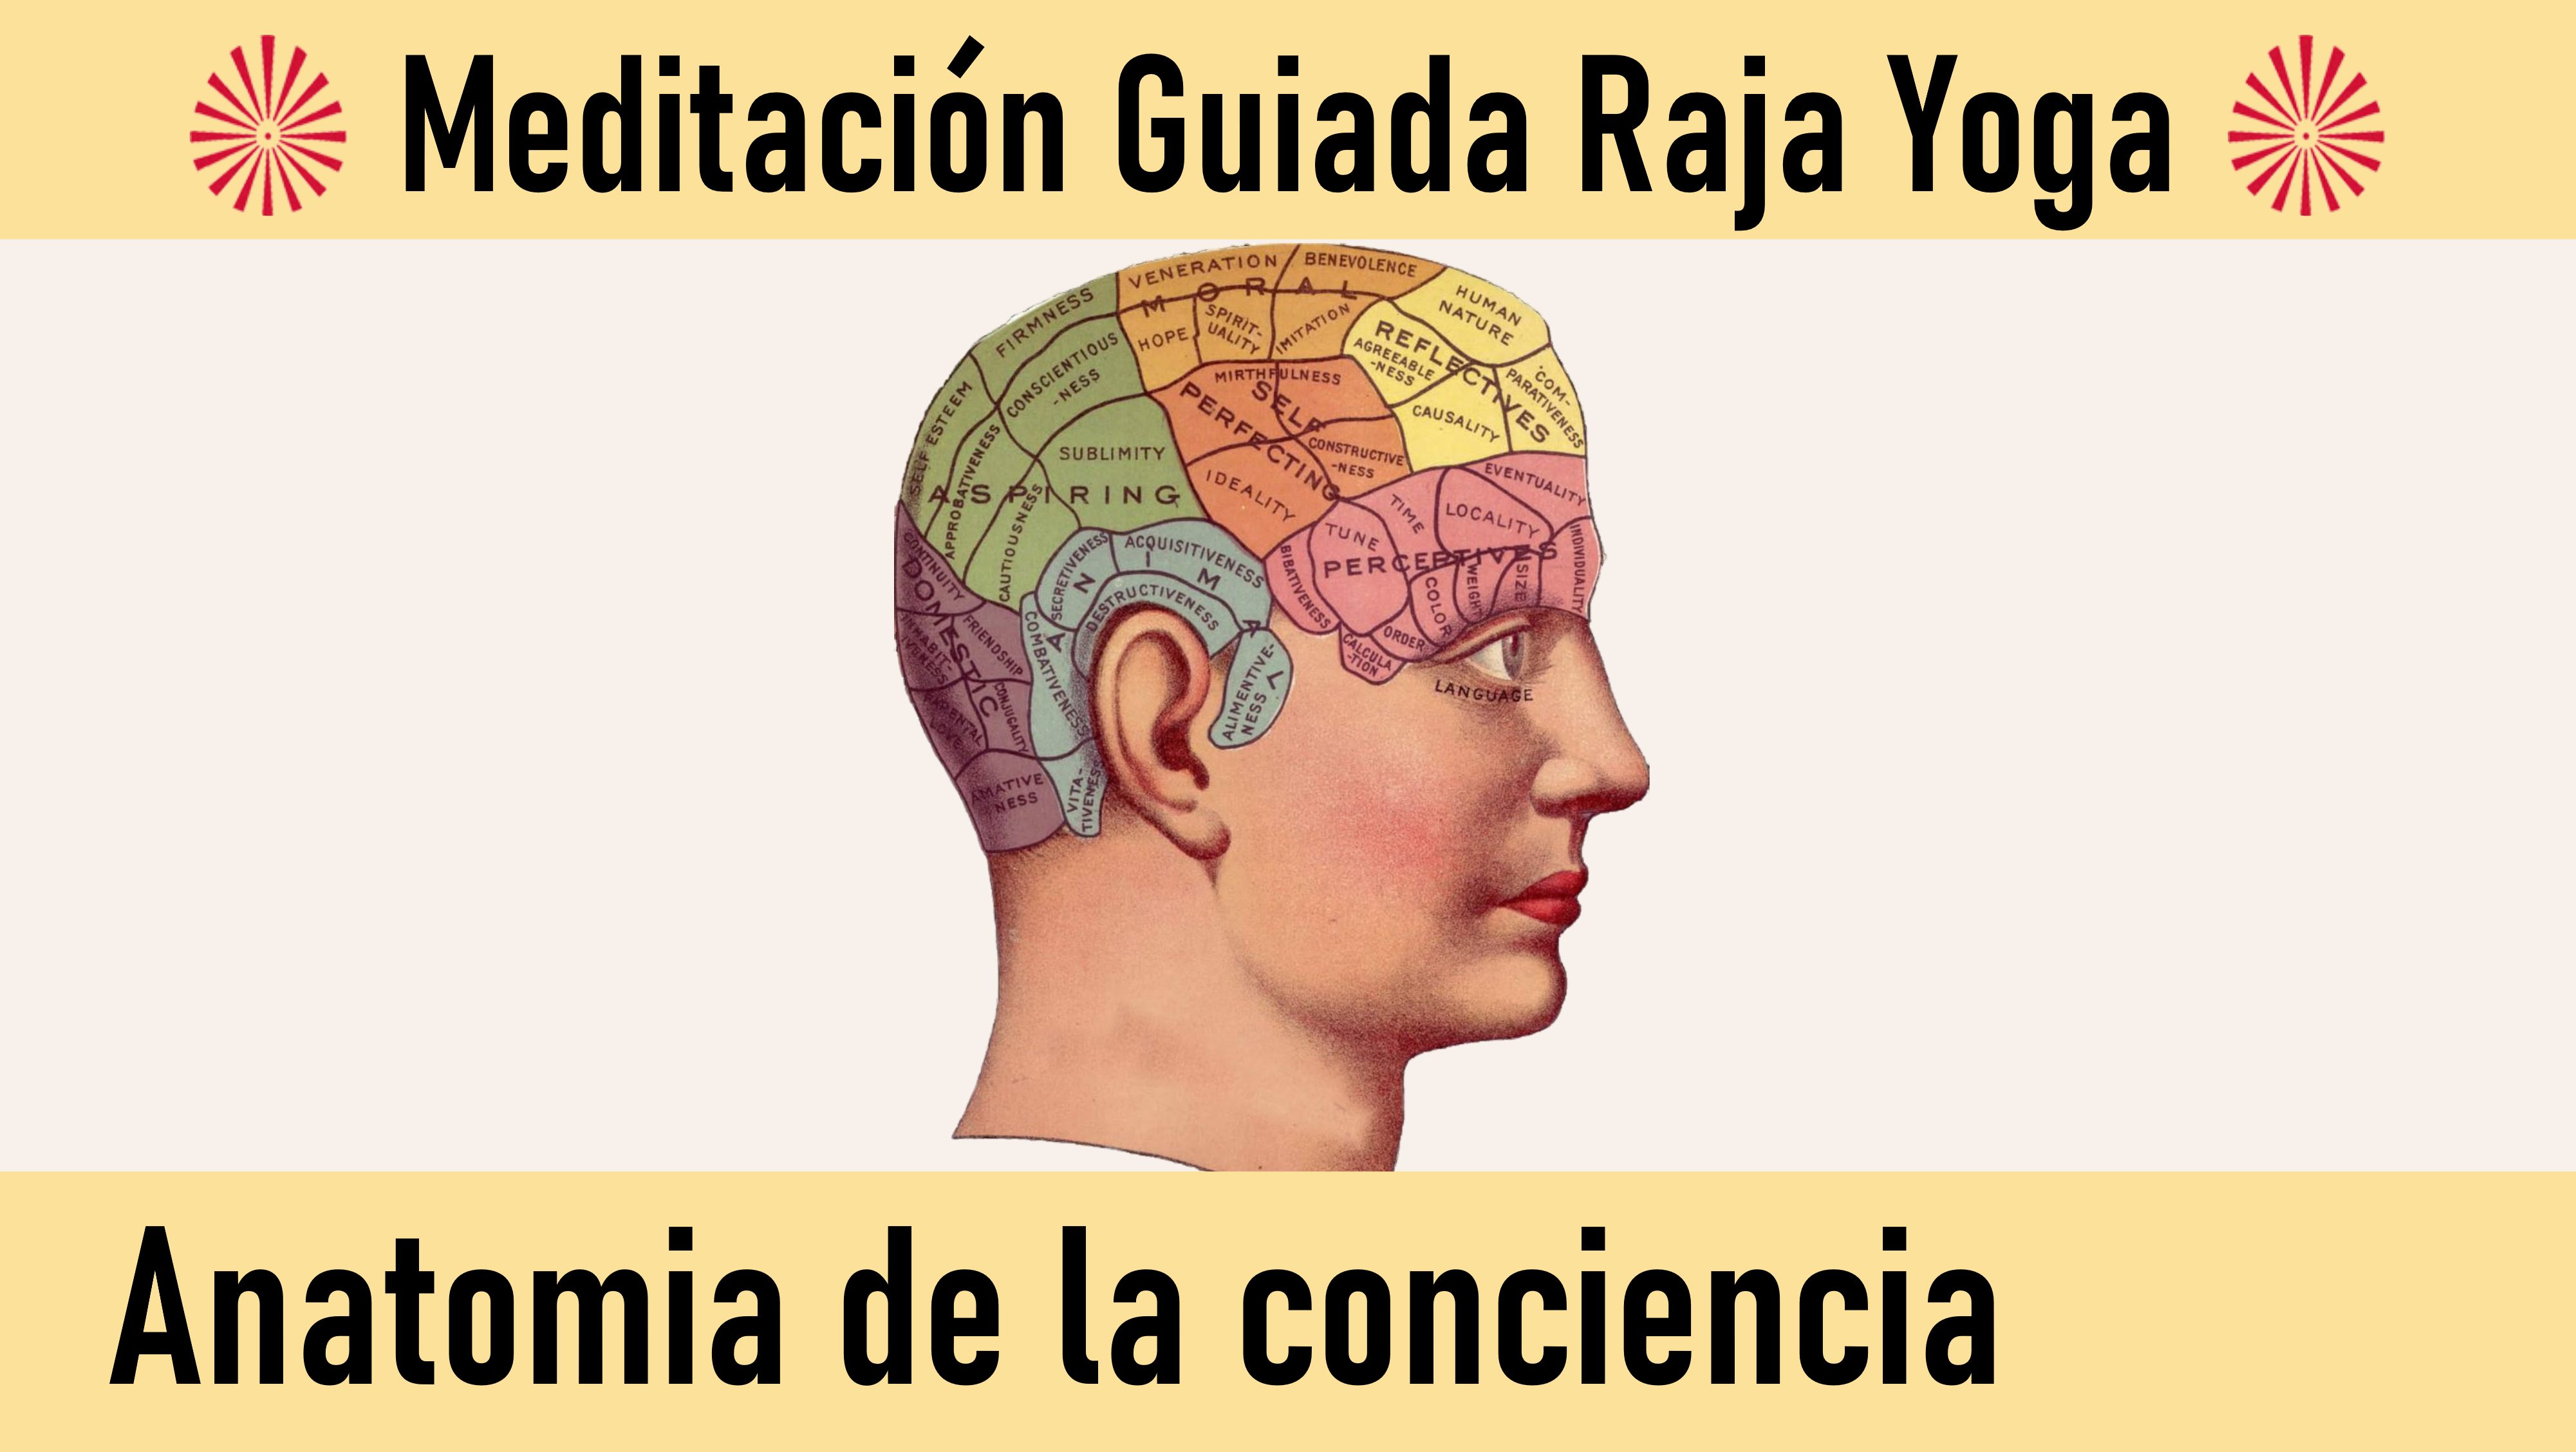 Meditación Raja Yoga: Anatomía de la conciencia (14 Julio 2020) On-line desde Mallorca